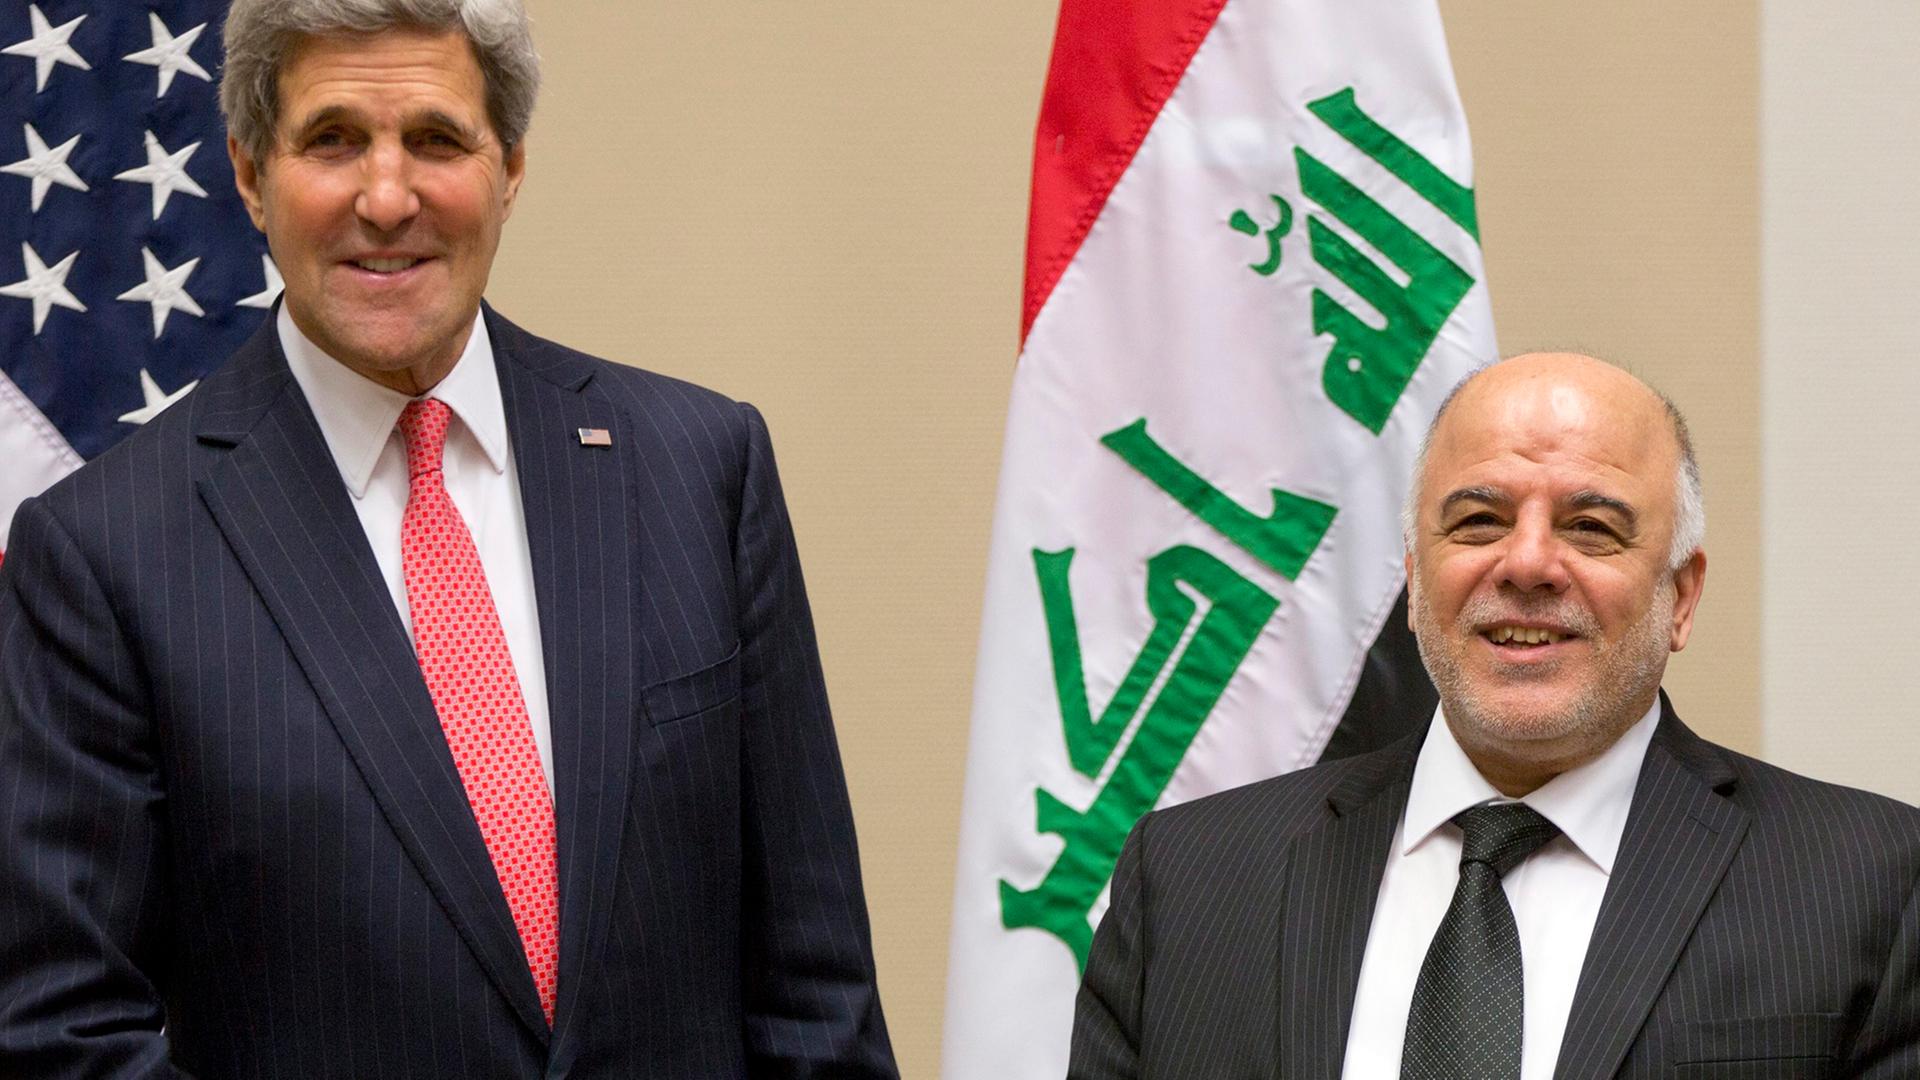 US-Außenminister Kerry und sein irakischer Kollege Al-Jaafari bei einem Treffen des Bündnisses gegen die Terrormiliz IS